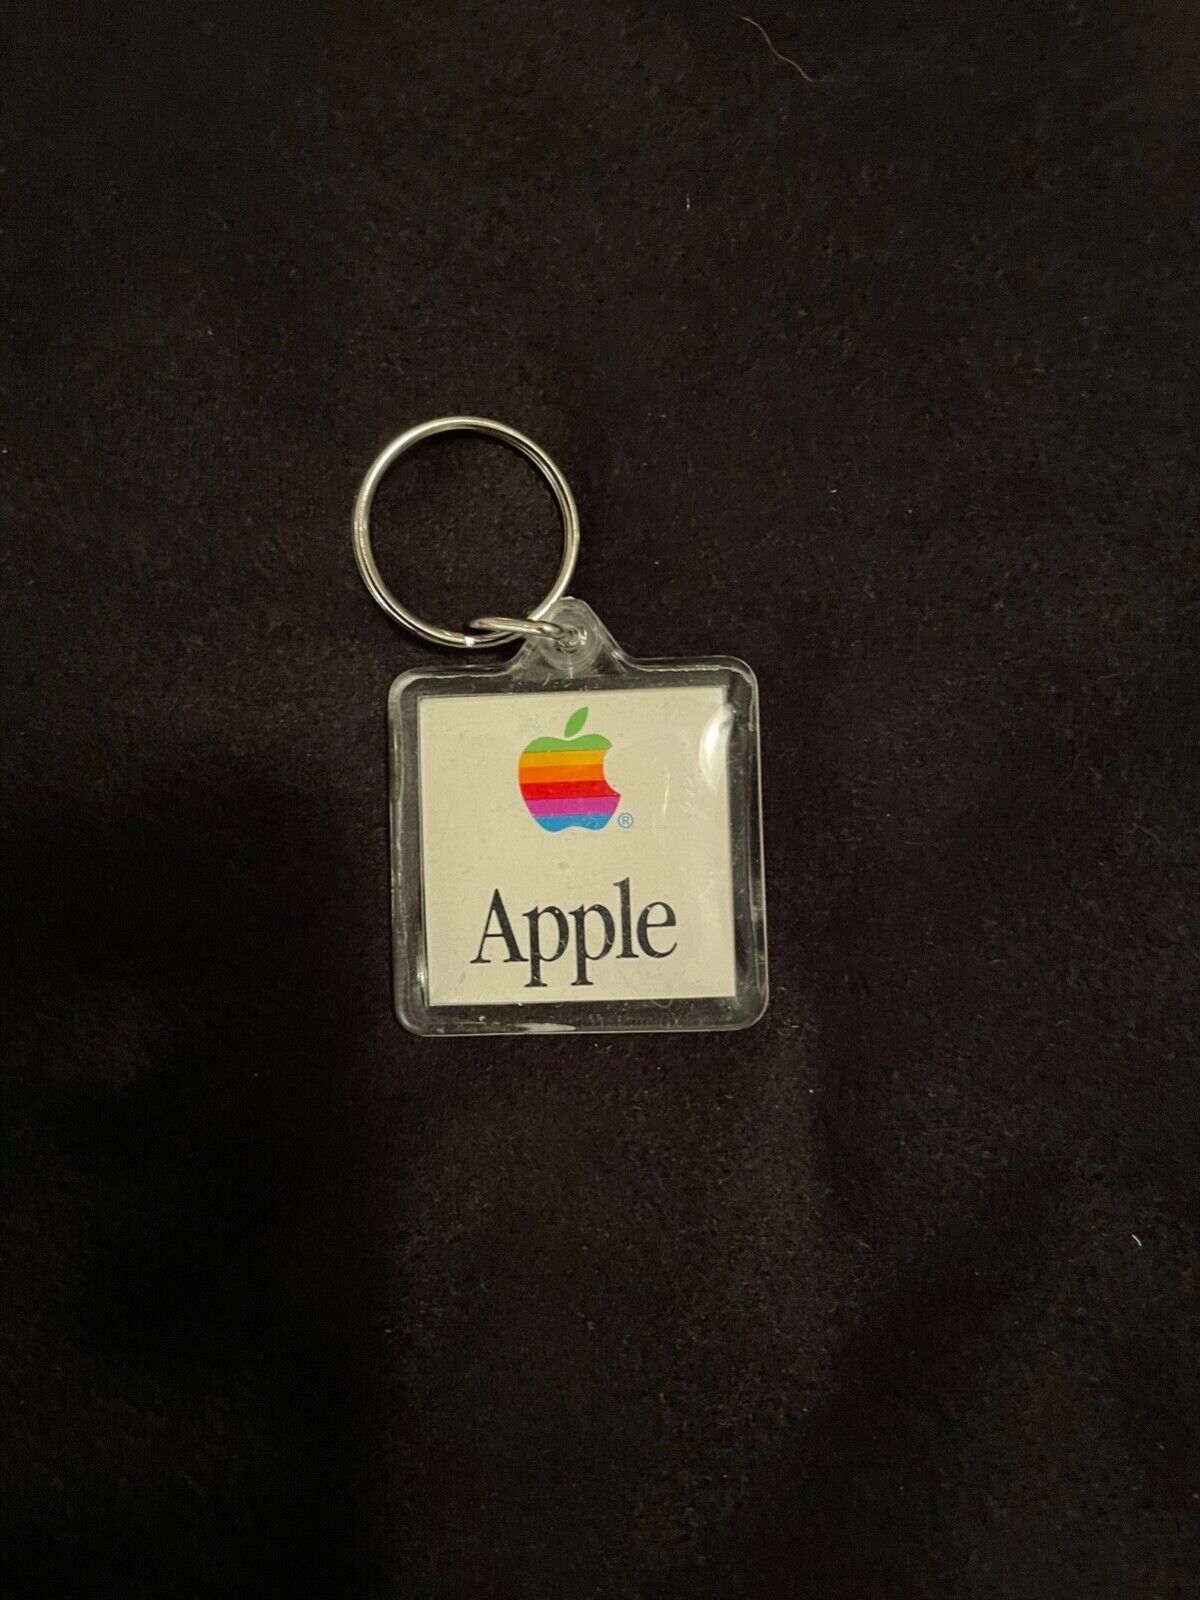 Apple Mac OS Rainbow/Smile Face Clear Acrylic Keychain - 1990s Vintage